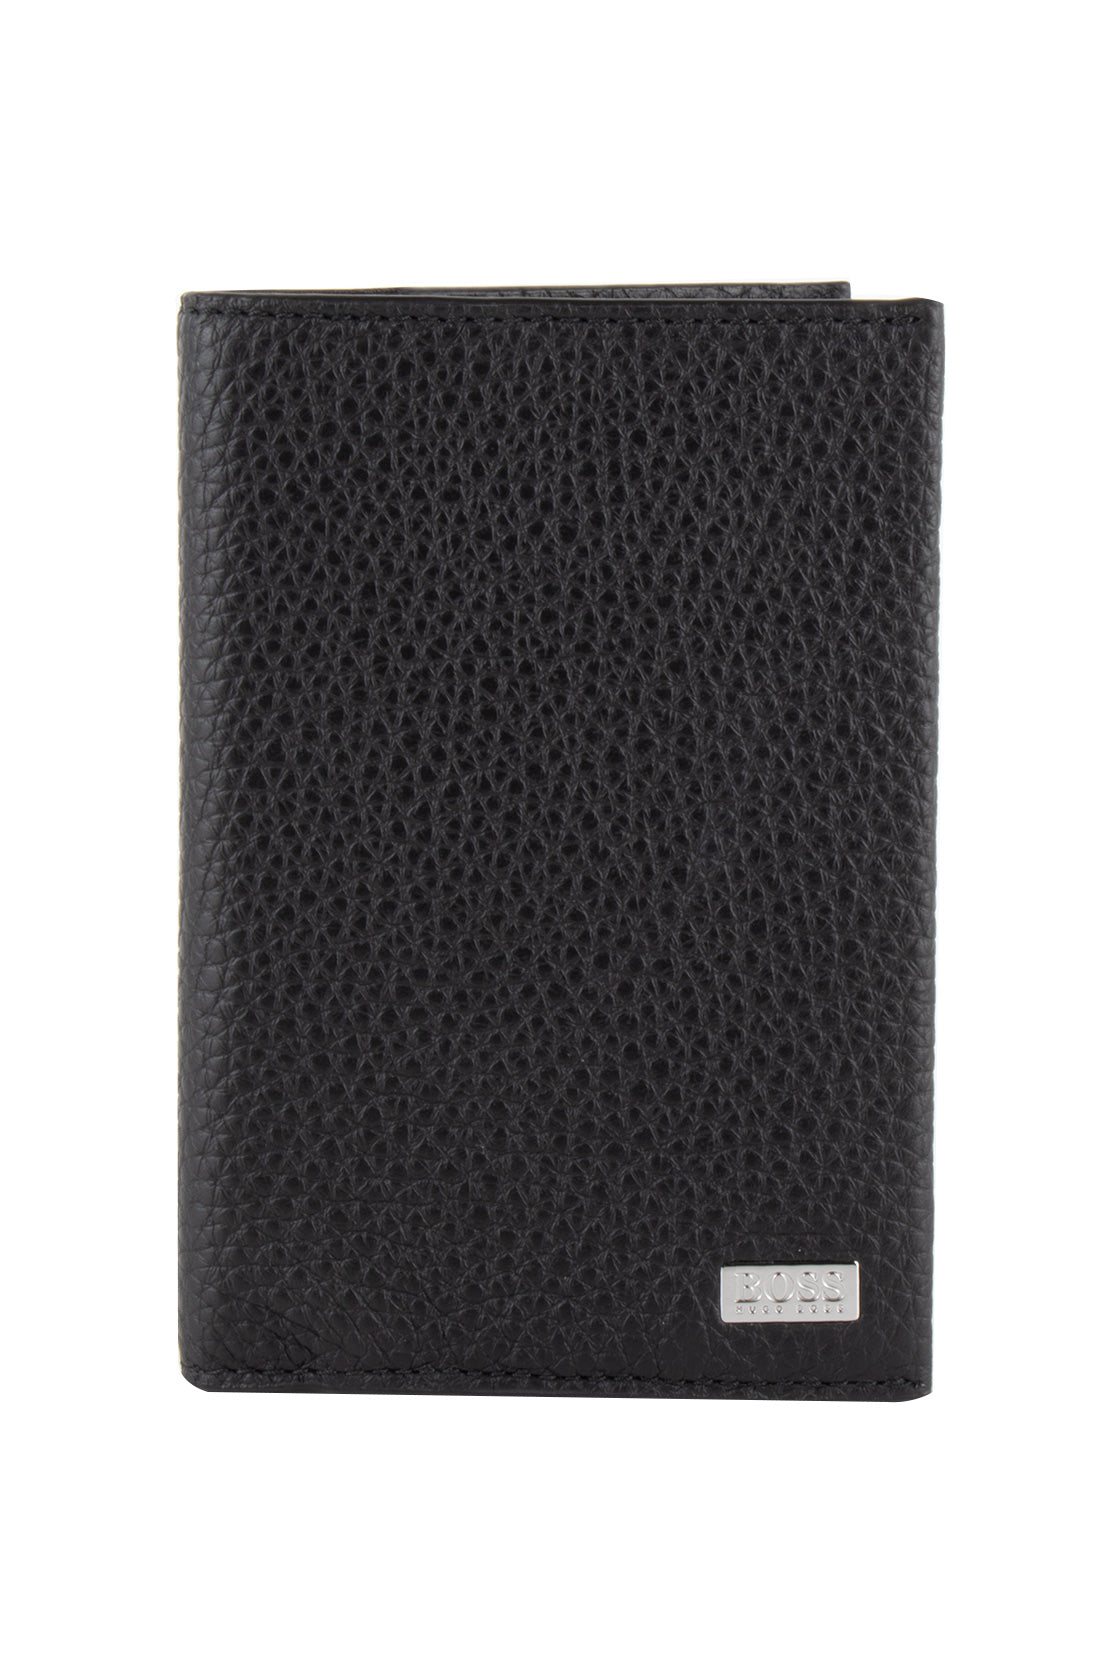 Hugo Boss Crosstown Passport Leather Wallet Black